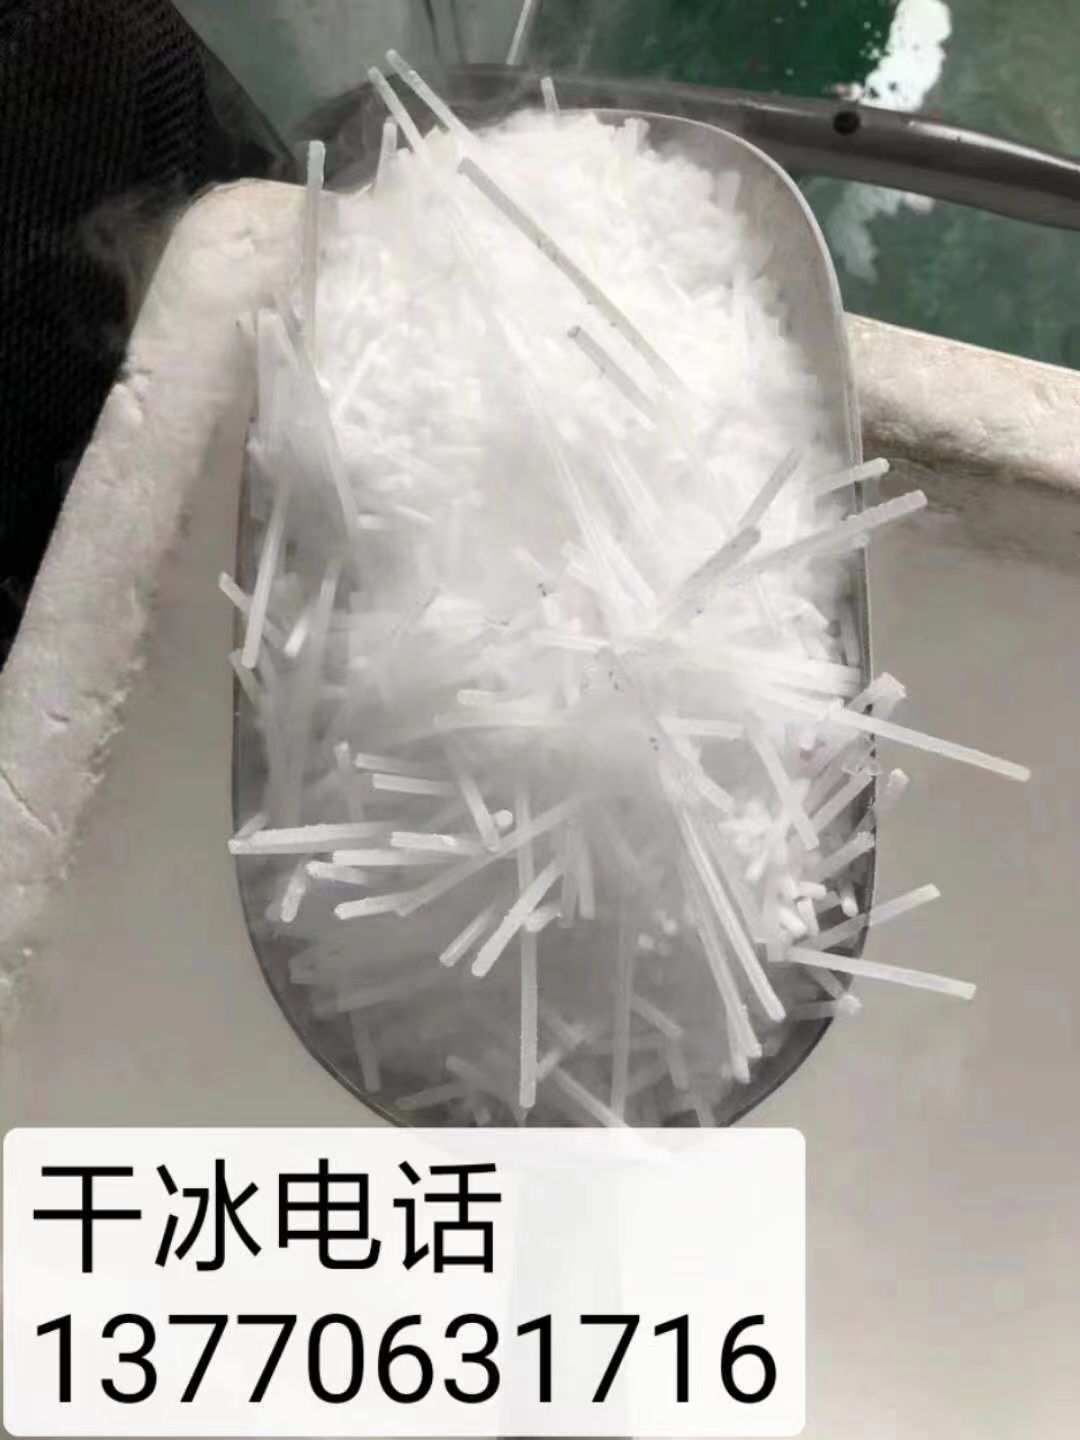 南京干冰清洗机 南京干冰哪家好 工业级干冰 南京干冰配送